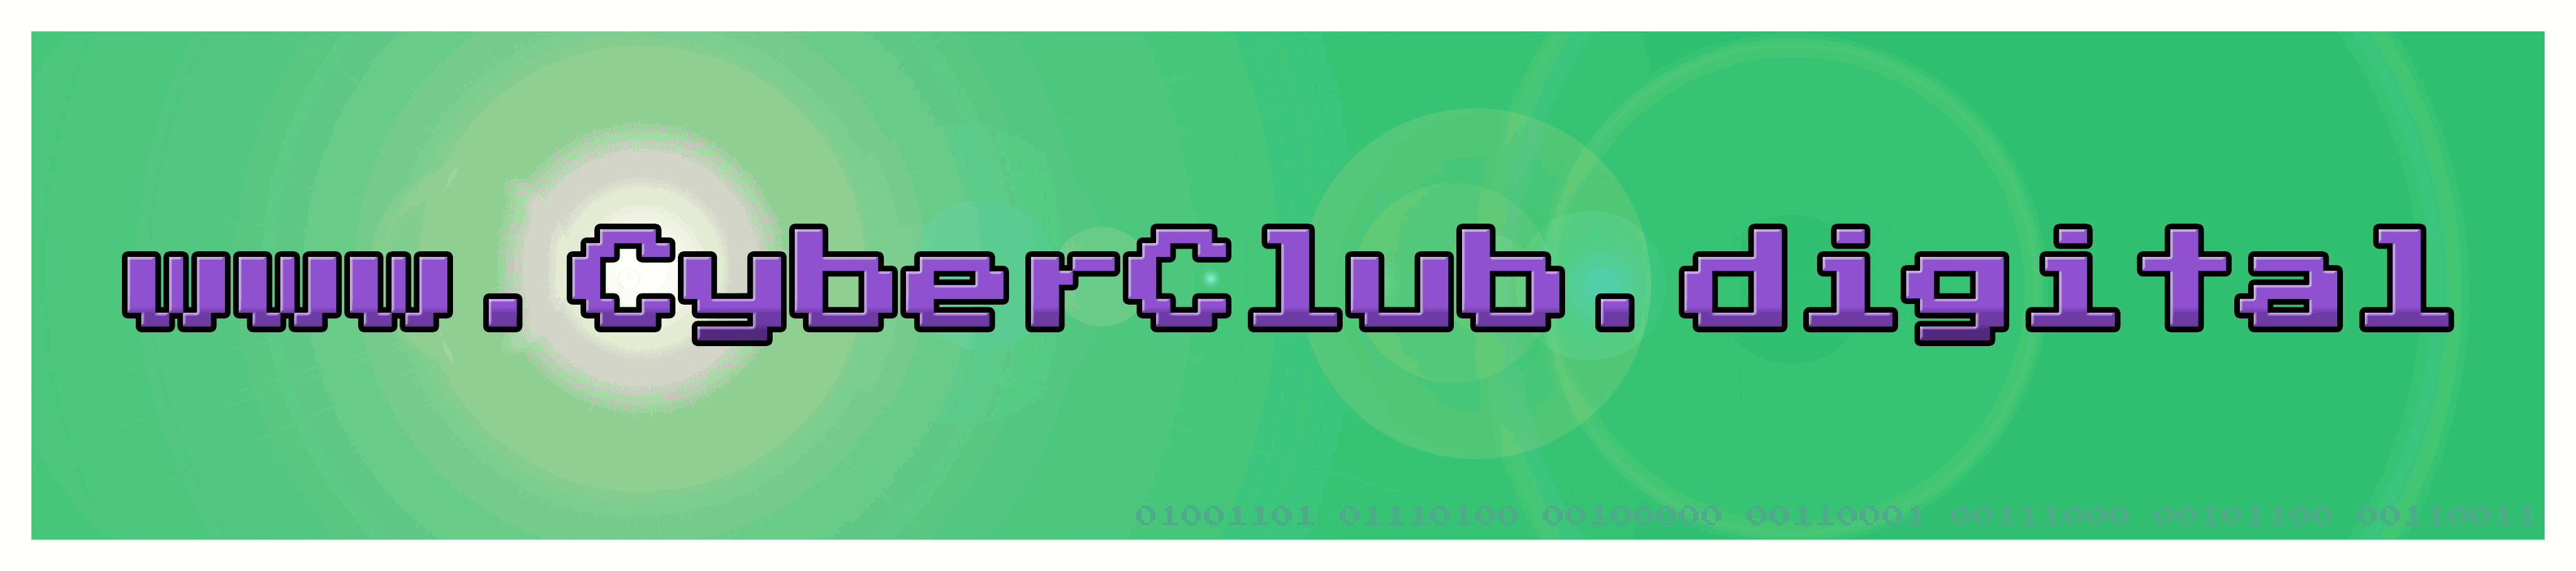 Logo High Resolution Cyberclub.digital